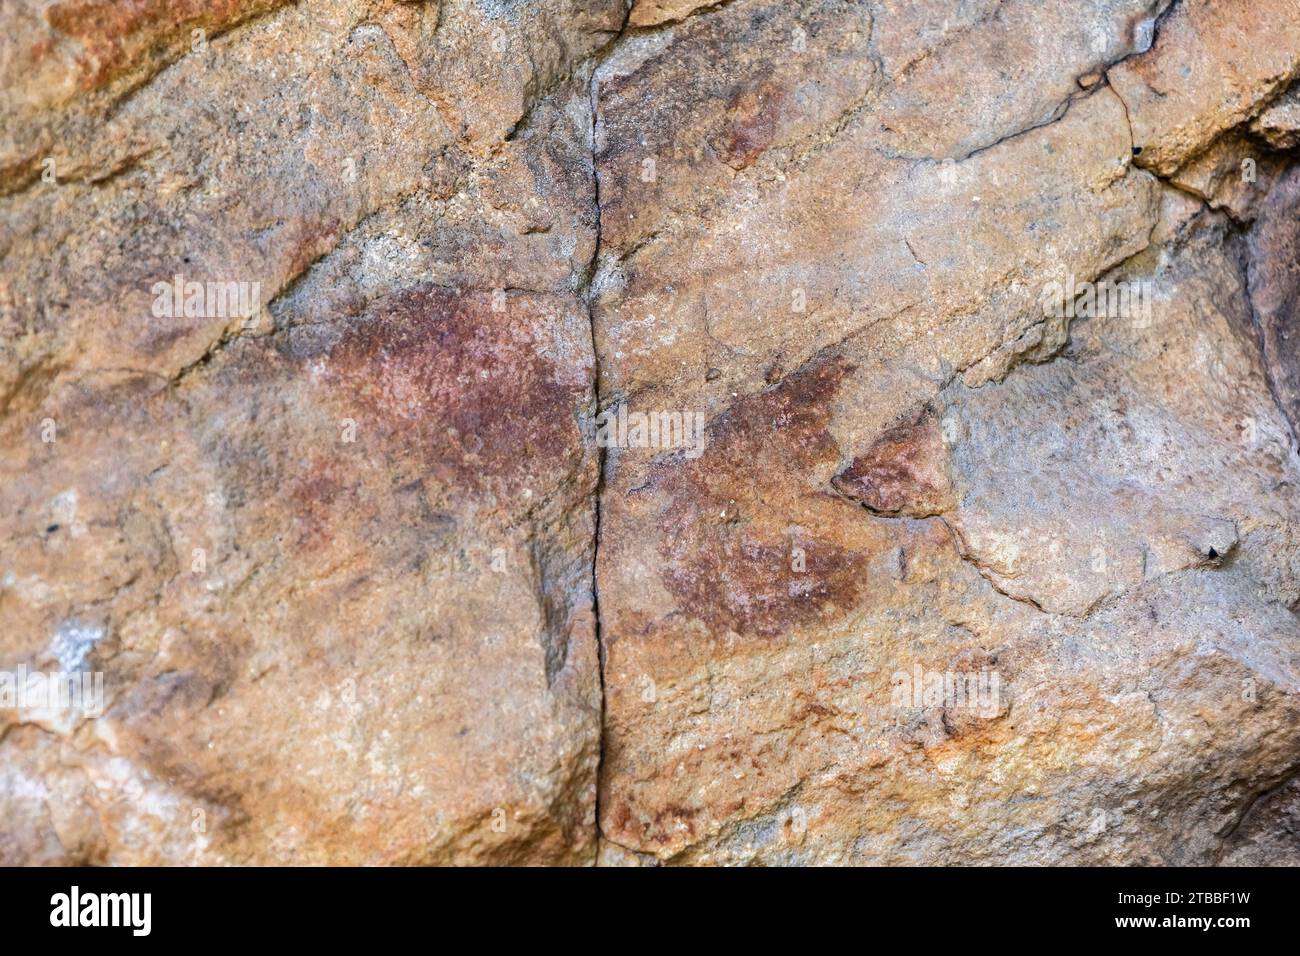 PHA Phak WAN, peintures rupestres préhistoriques à énorme rocher, district de Song Dao, Sakon Nakhon, Isan, Thaïlande, Asie du Sud-est, Asie Banque D'Images